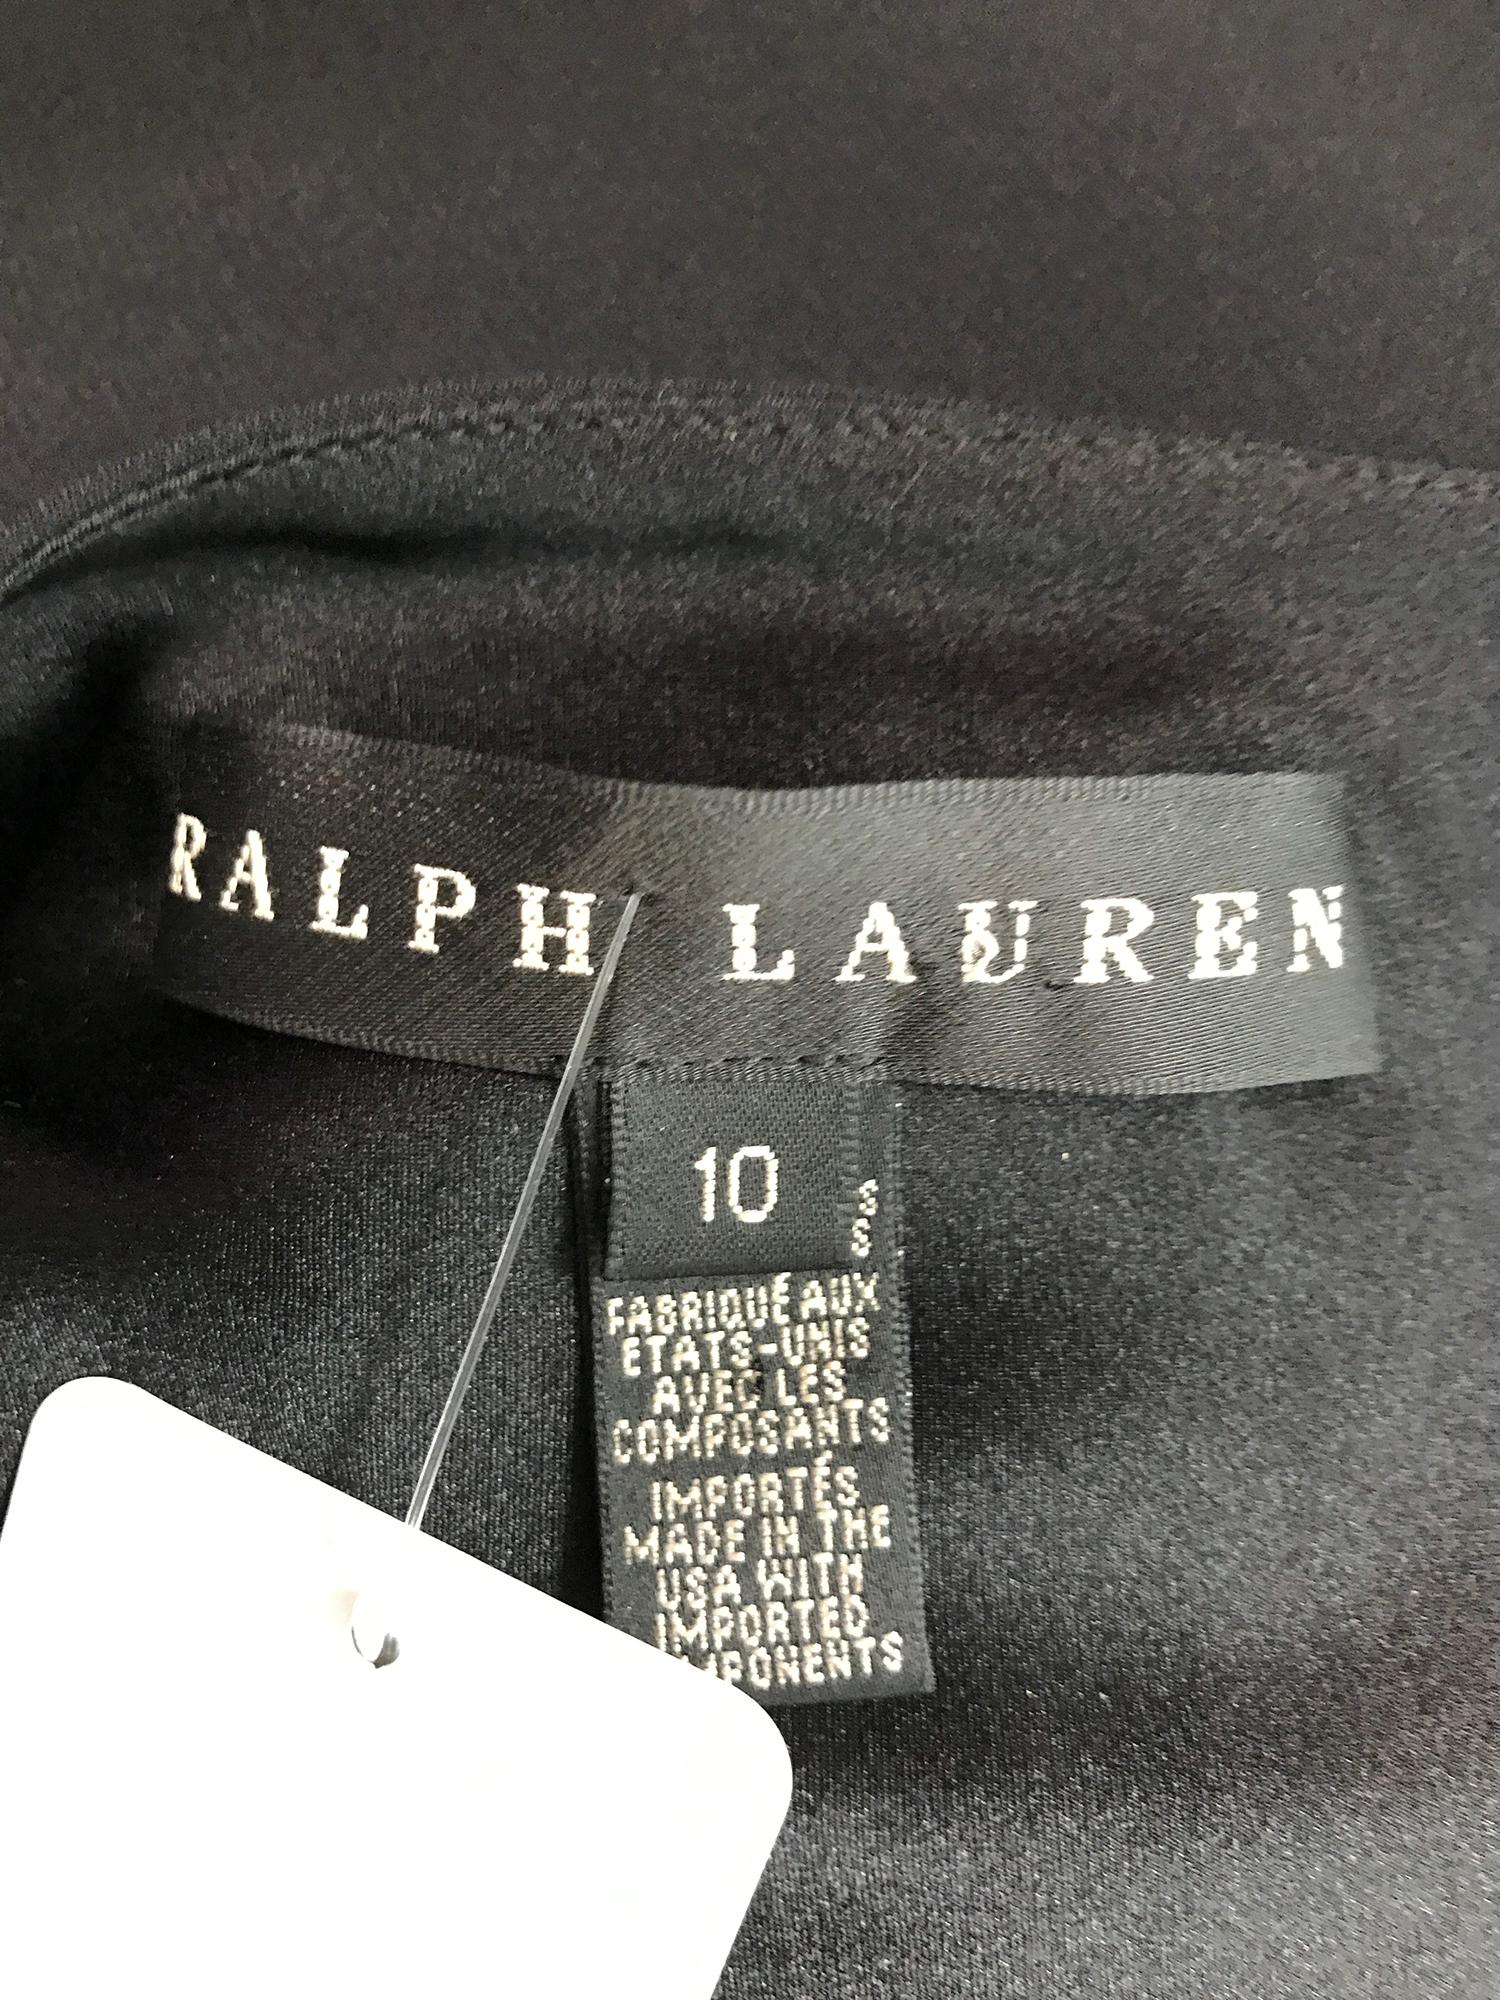 Ralph Lauren Black Label Beaded Halter Neck Evening Dress 10 5